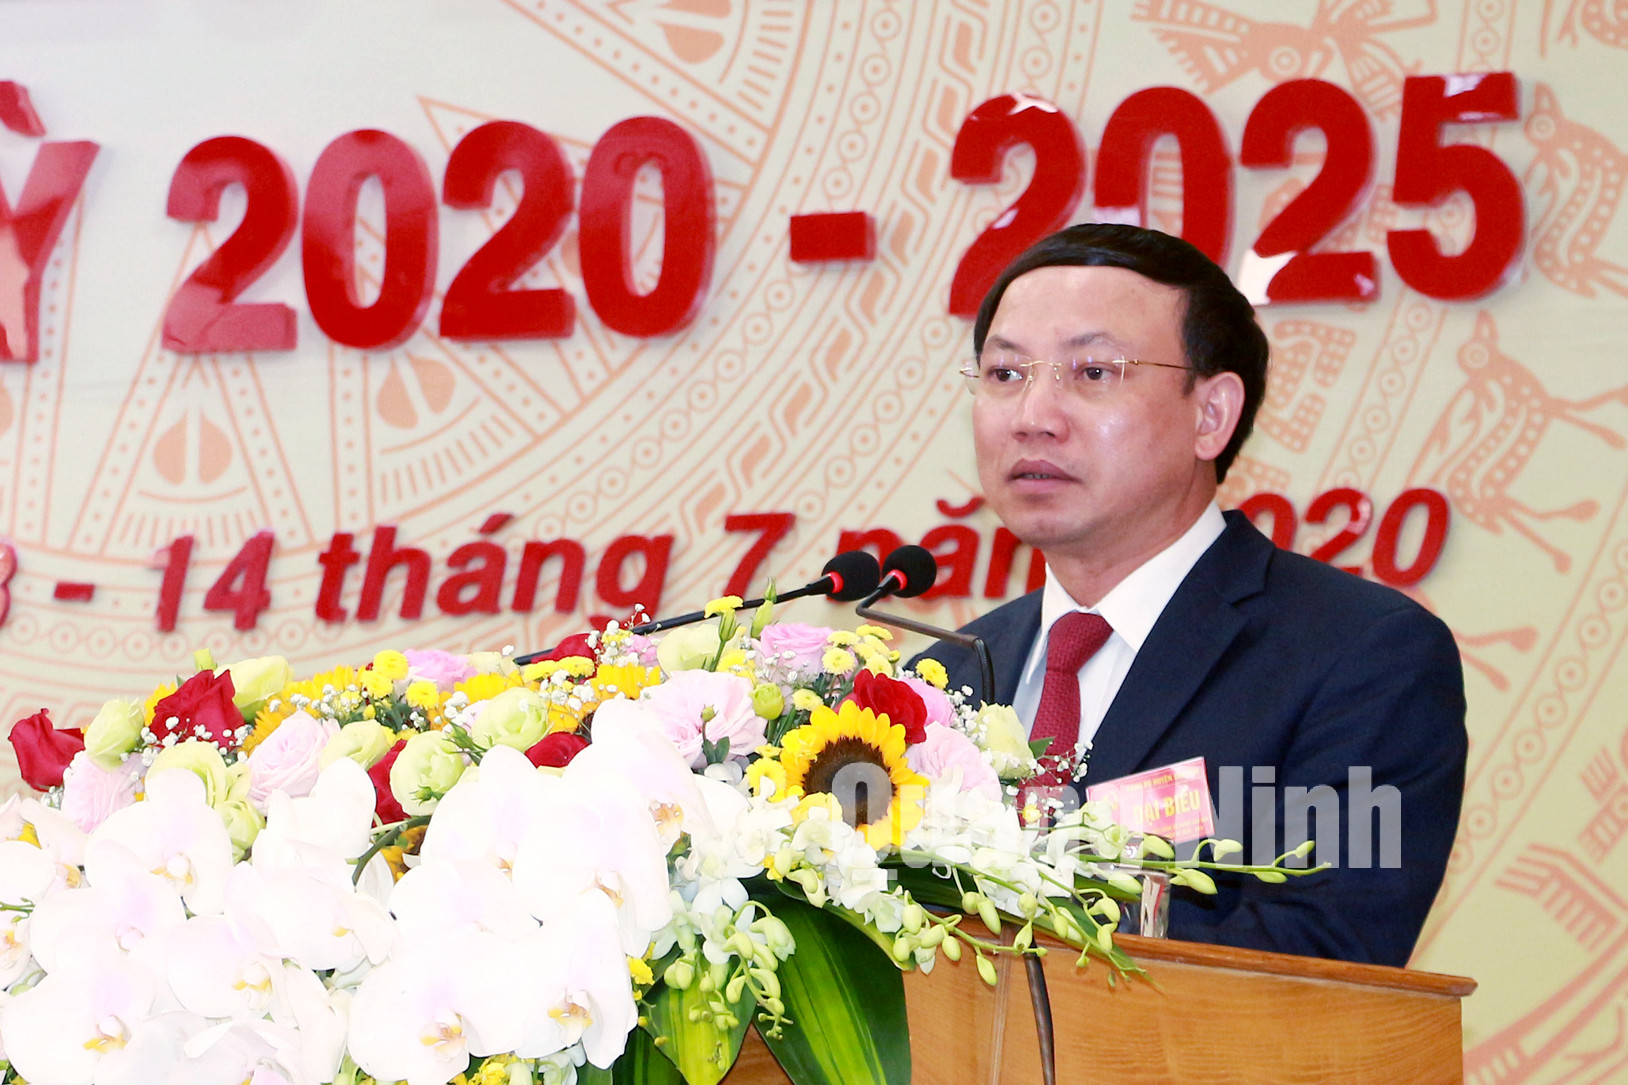 Đồng chí Nguyễn Xuân Ký, Bí thư Tỉnh ủy, Chủ tịch HĐND tỉnh, phát biểu chỉ đạo Đại hội (7-2020). Ảnh: Mạnh Trường